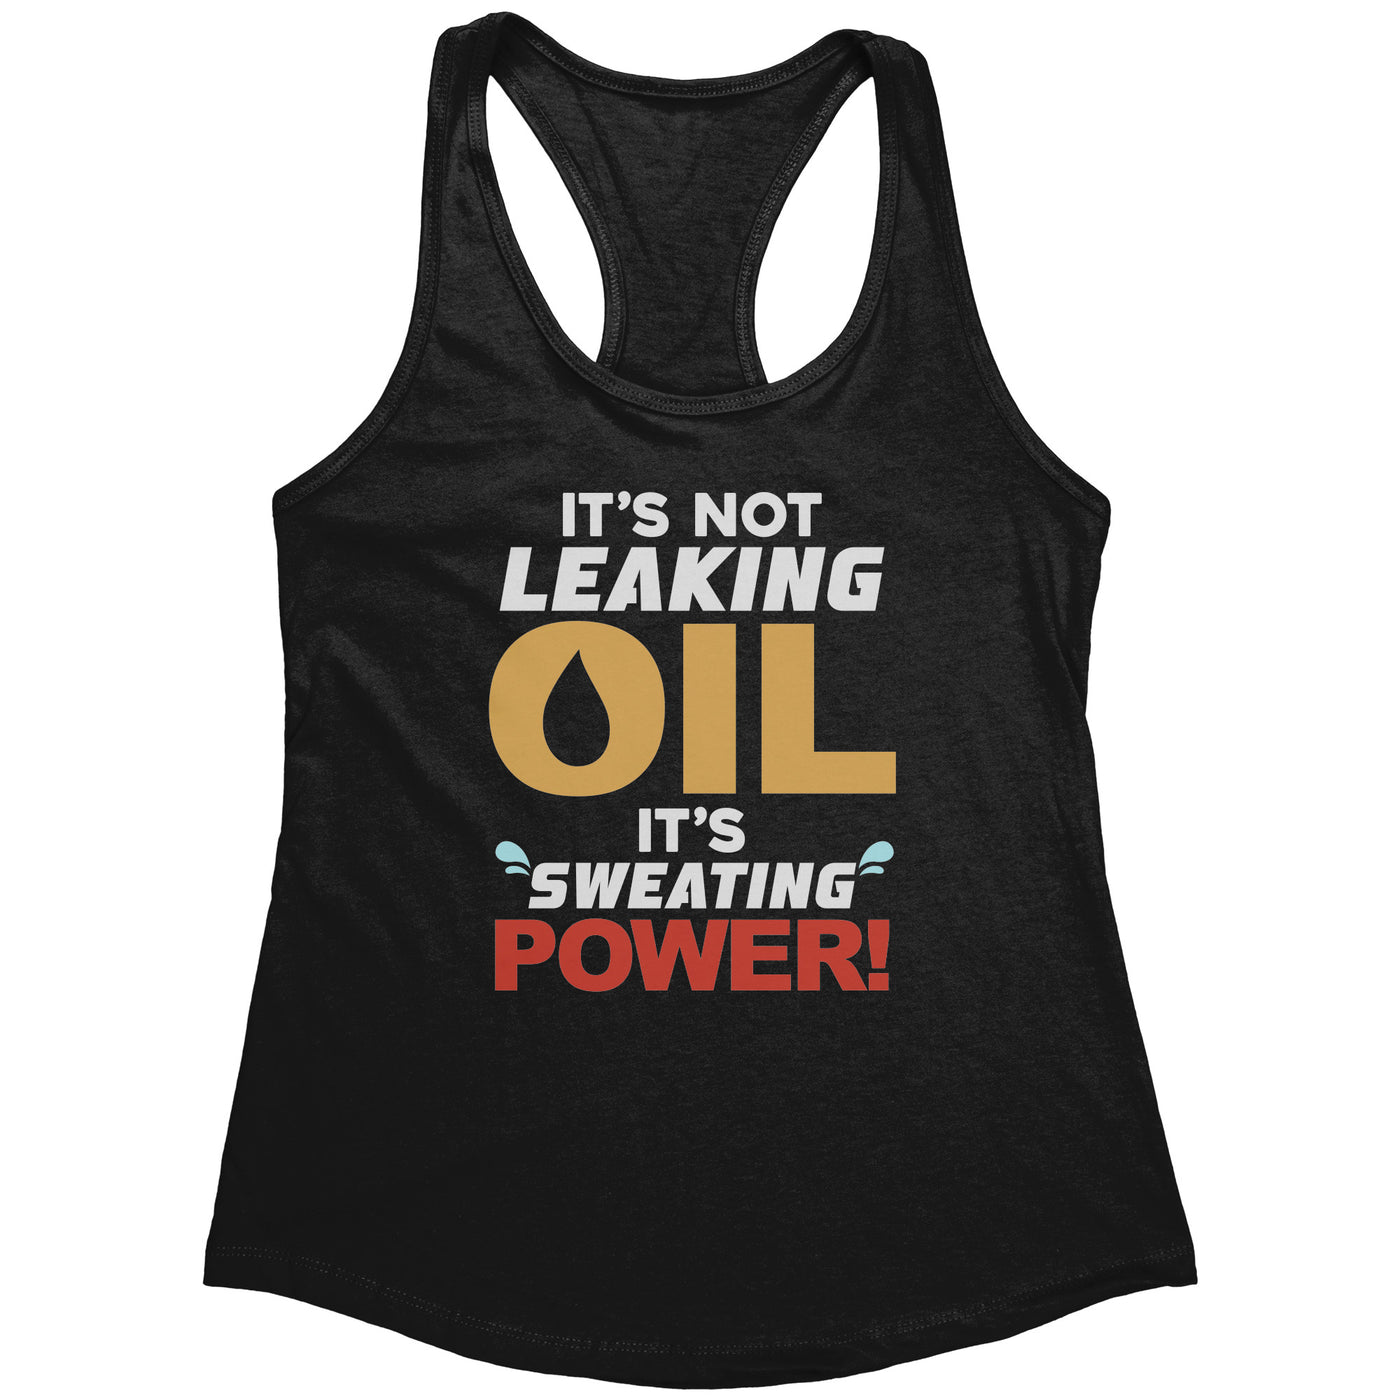 It's Not Leaking Oil, It's Sweating Power Women's Tank